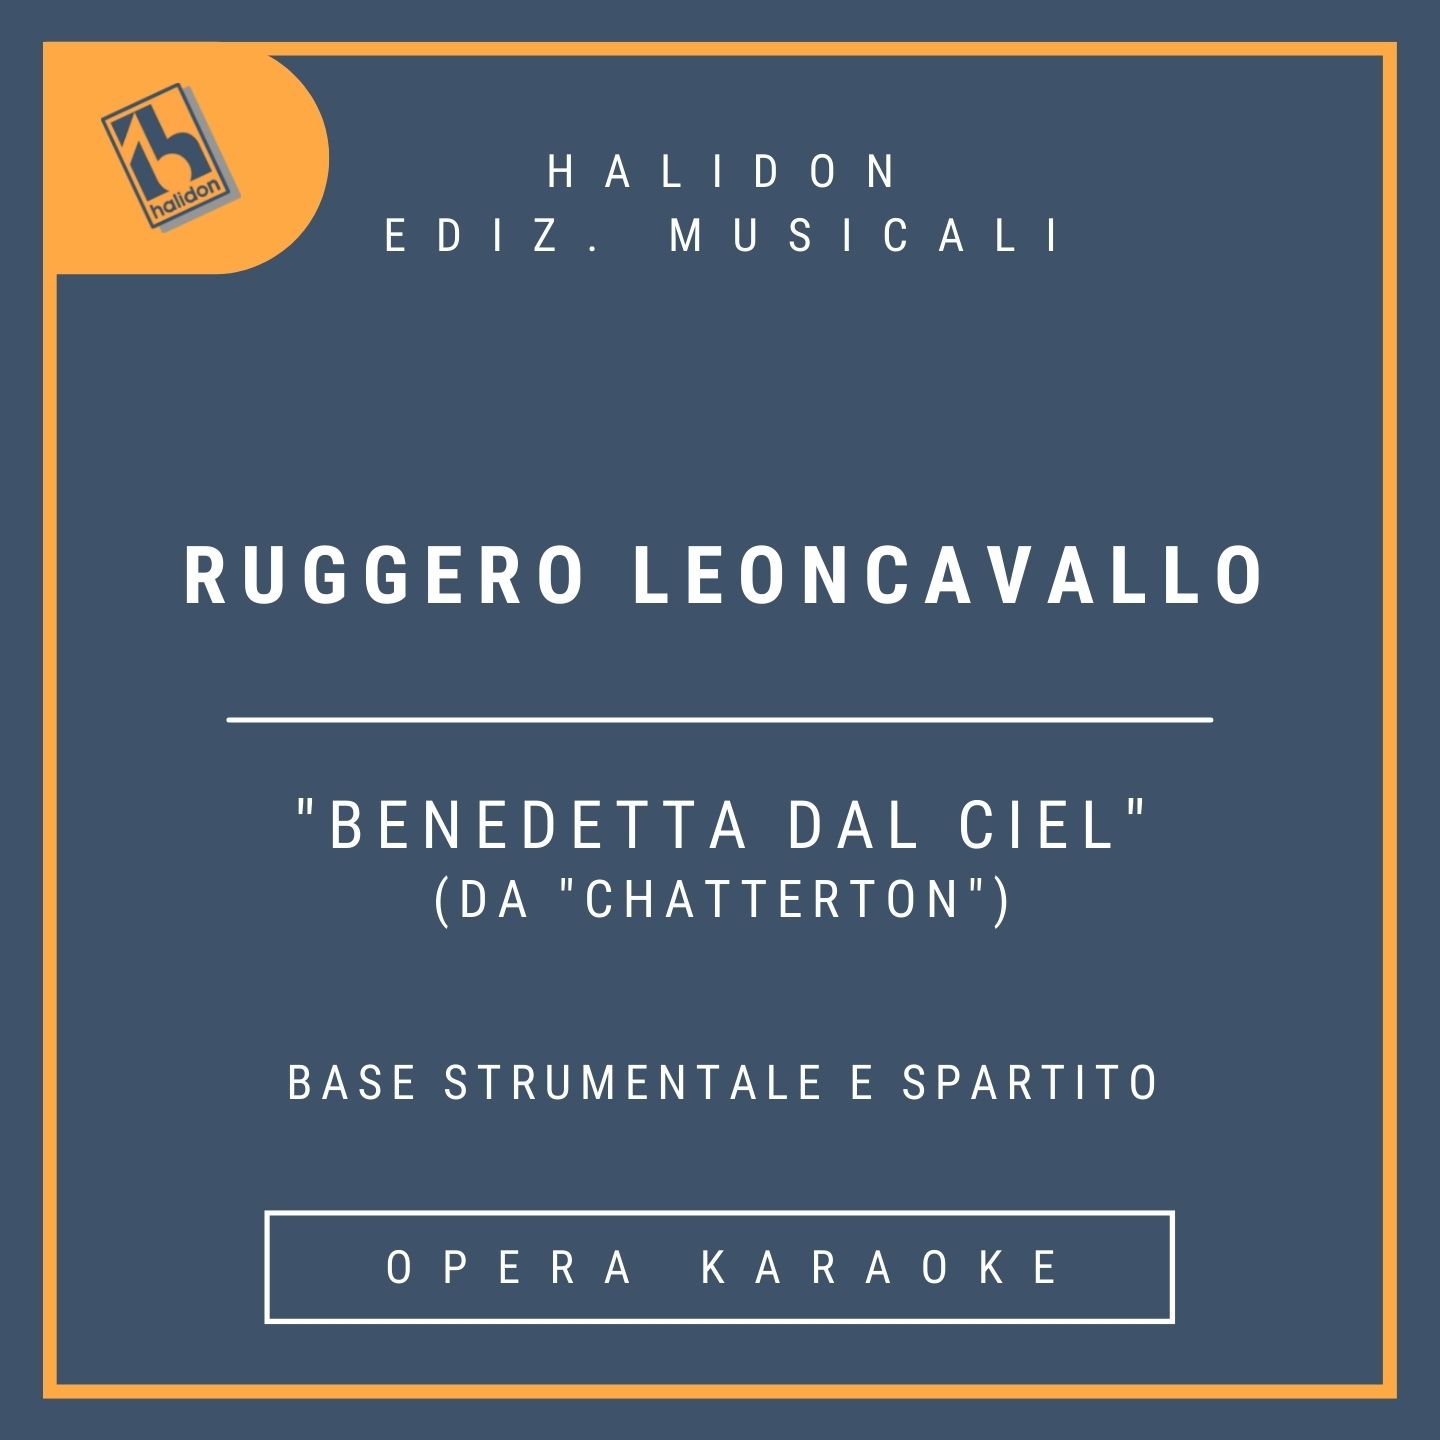 Ruggero Leoncavallo - Benedetta dal ciel (da 'Chatterton') - Cantabile di Jenny (soprano drammatico) - Base strumentale + spartito